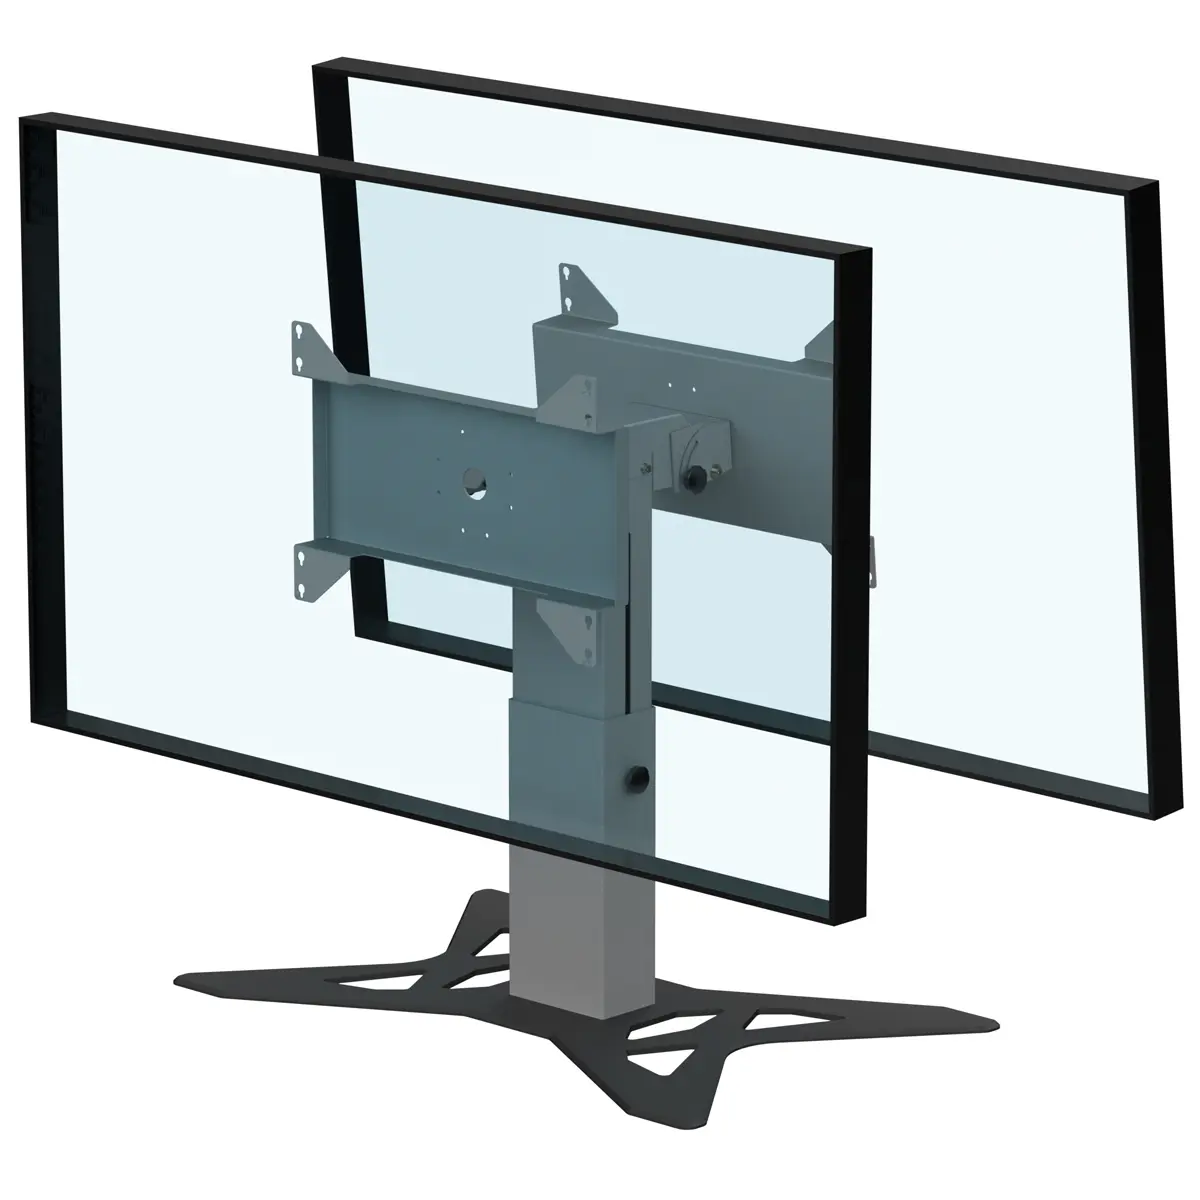 Support double écrans bas retour écran hauteur réglable 500-800mm réglable en hauteur avec embase type A